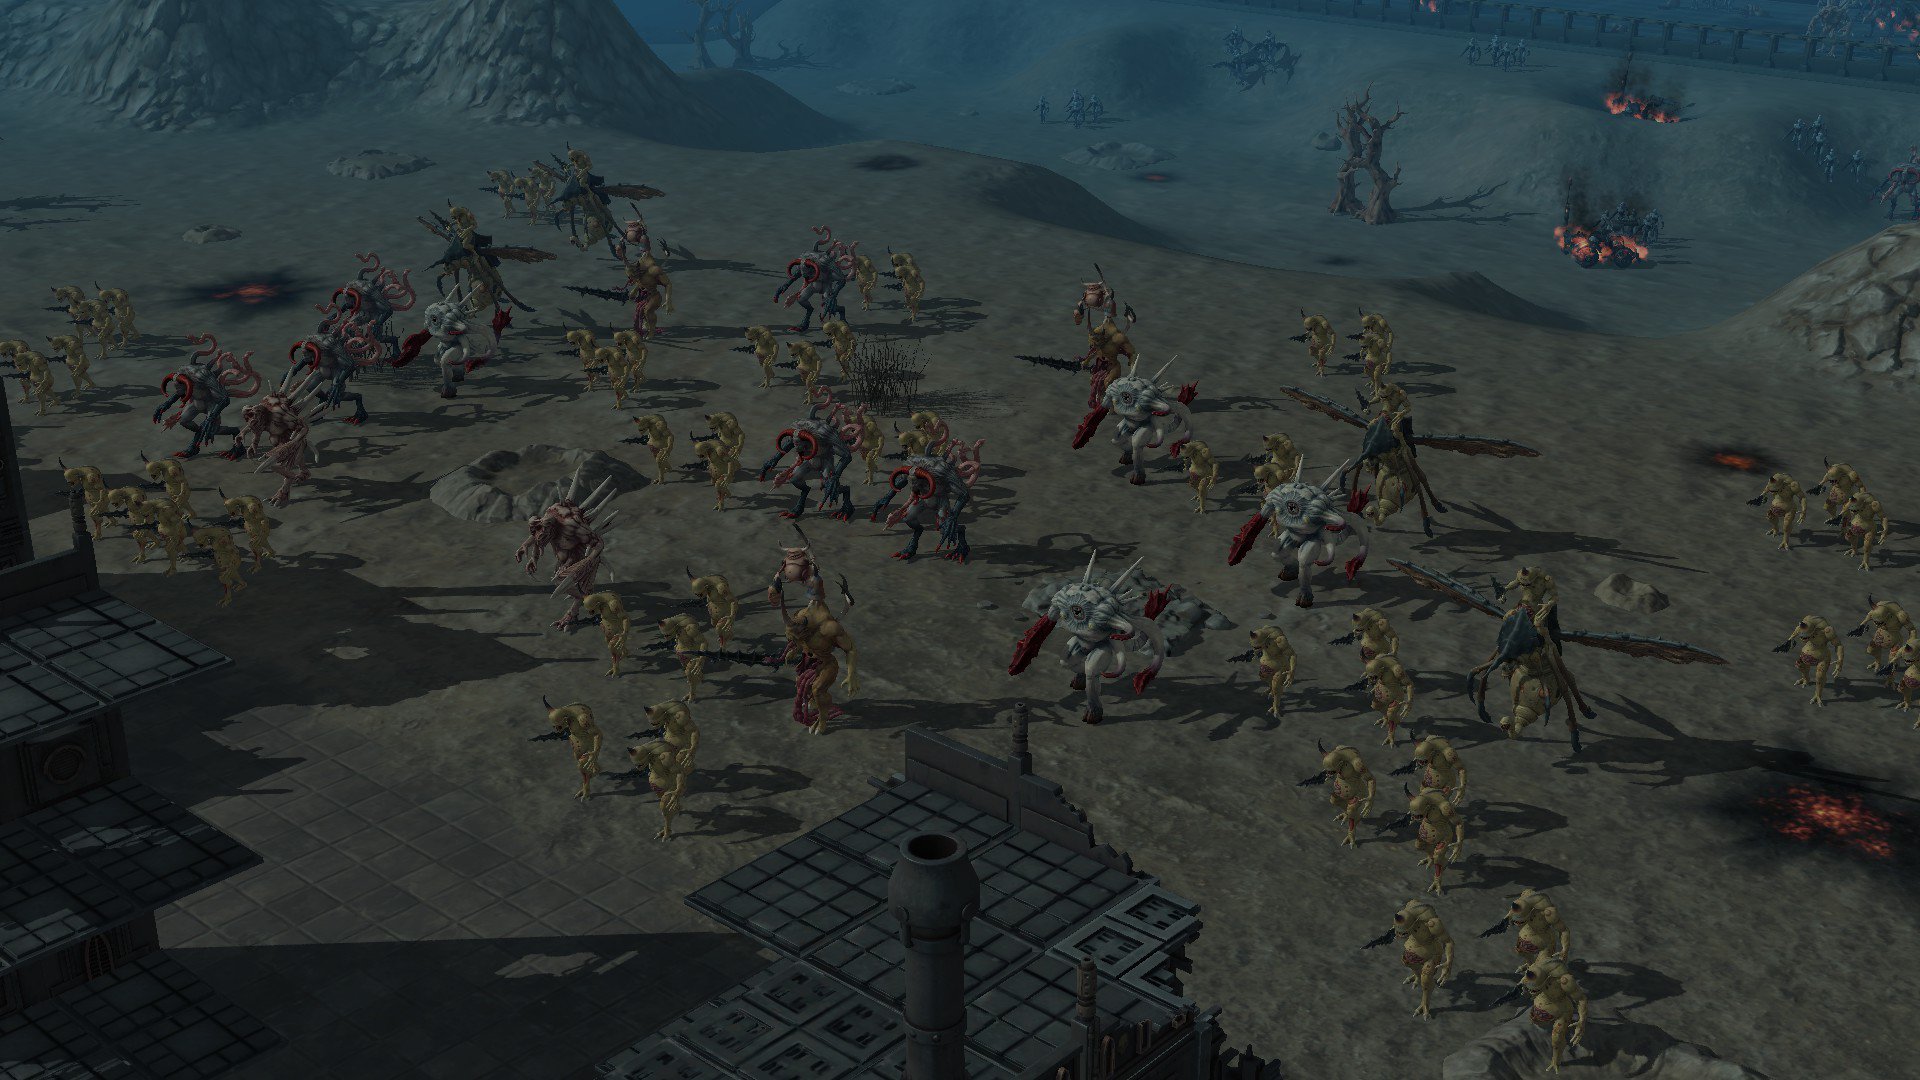 Warhammer 40,000 Sanctus Reach - Horrors of the Warp 2